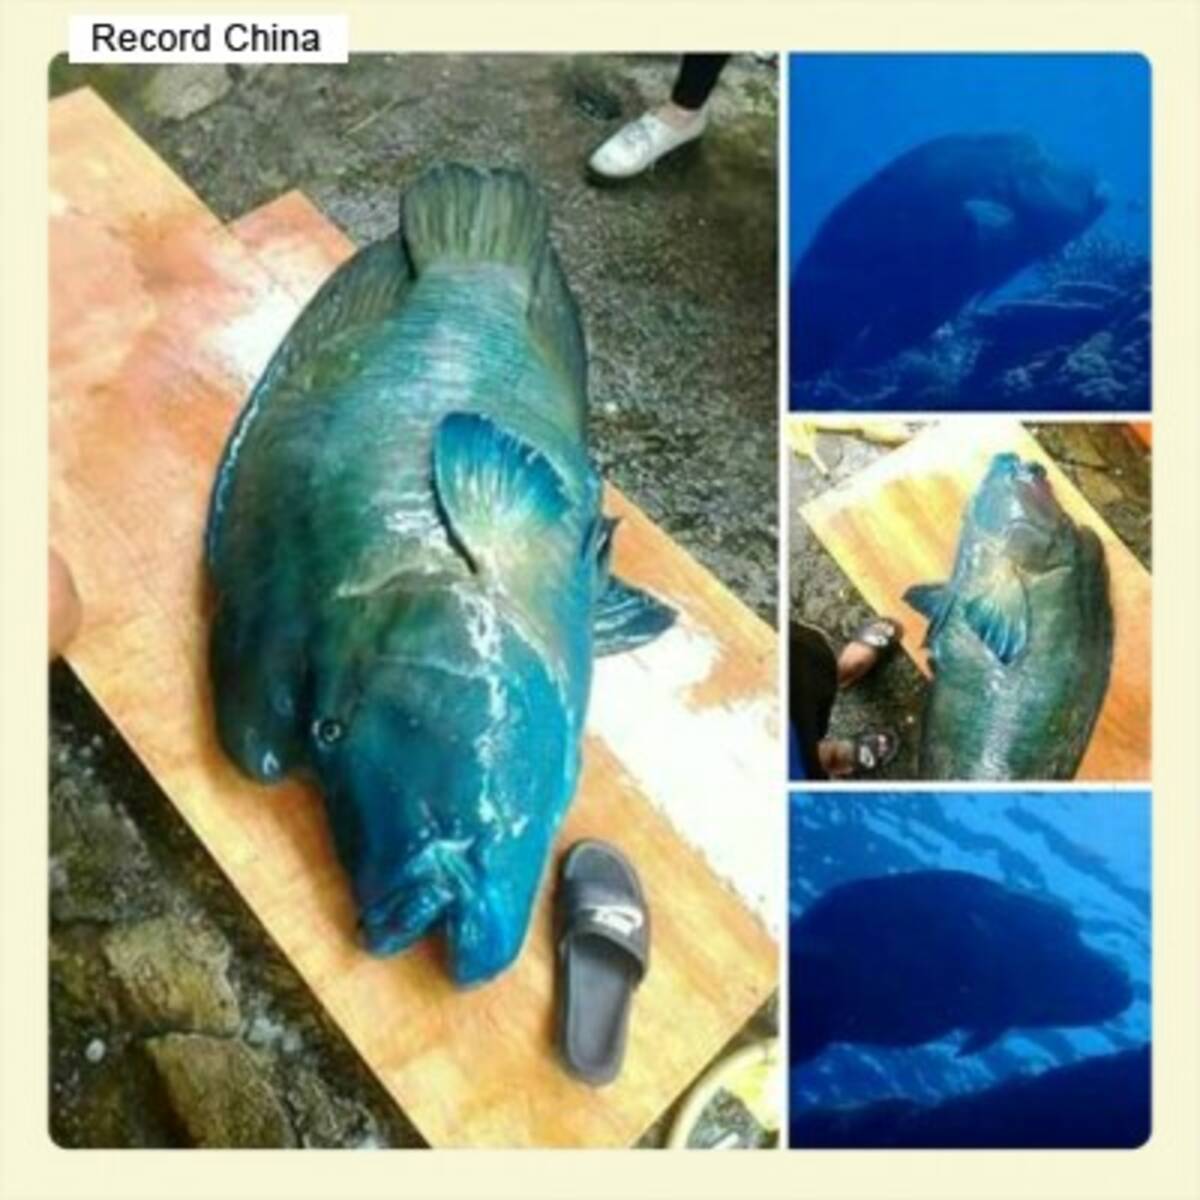 漁獲禁止の巨大魚を殺した民宿経営者 ネットユーザーから批判殺到 台湾 2016年5月24日 エキサイトニュース